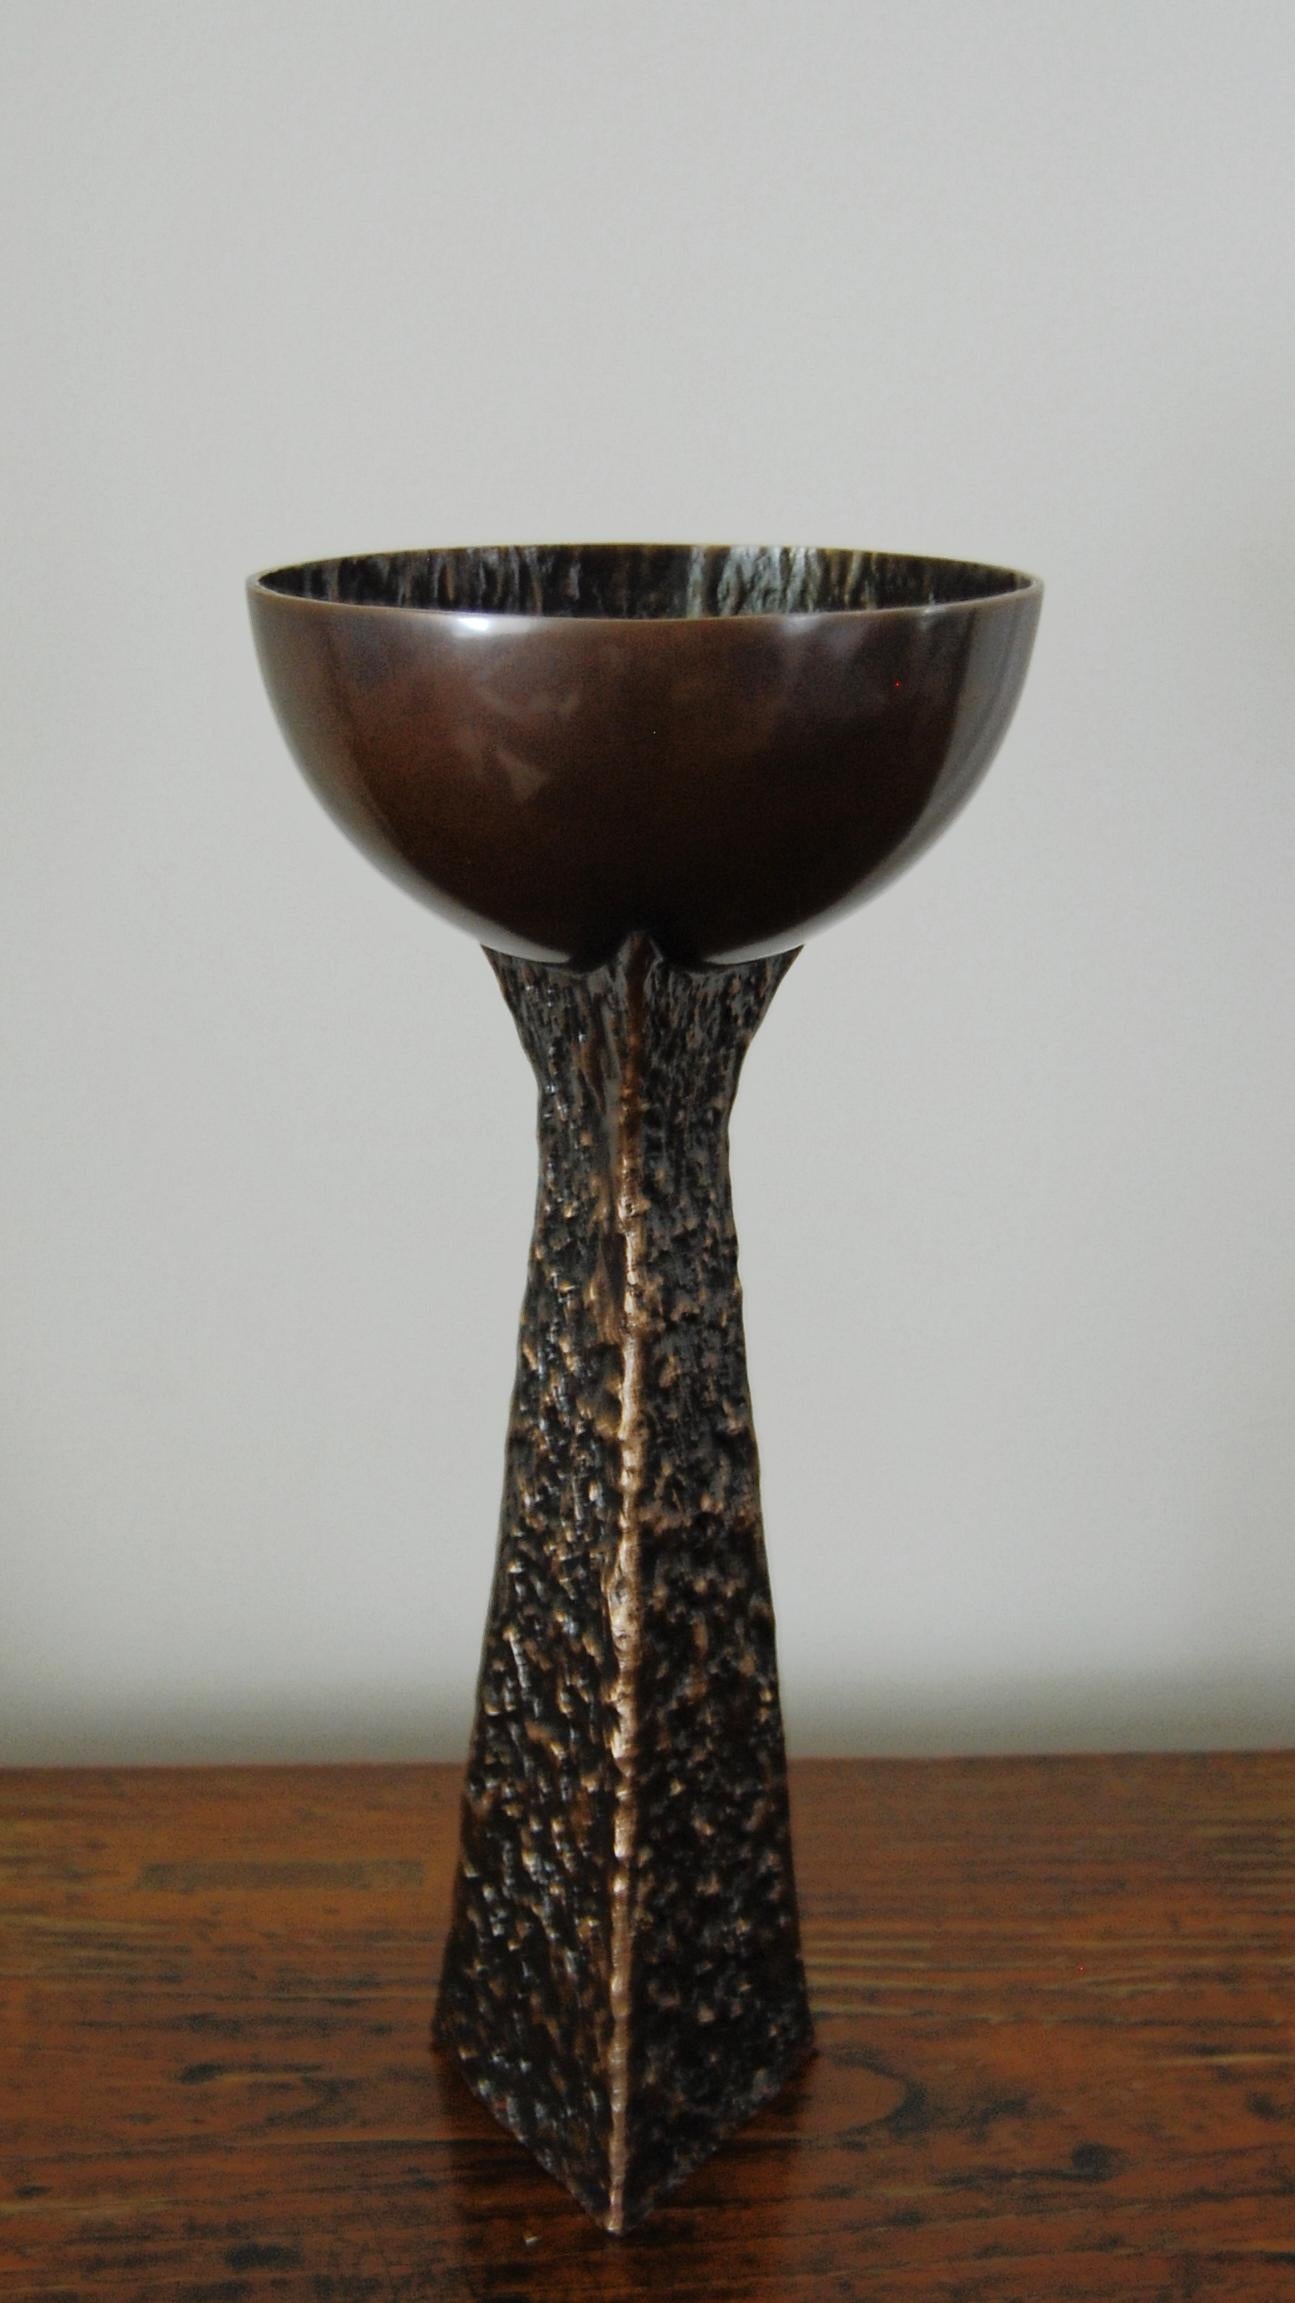 Cup vase in dark bronze by FAKASAKA Design
Dimensions: W 16 x D 16 x H 35.5 cm
Materials: Dark bronze.
 